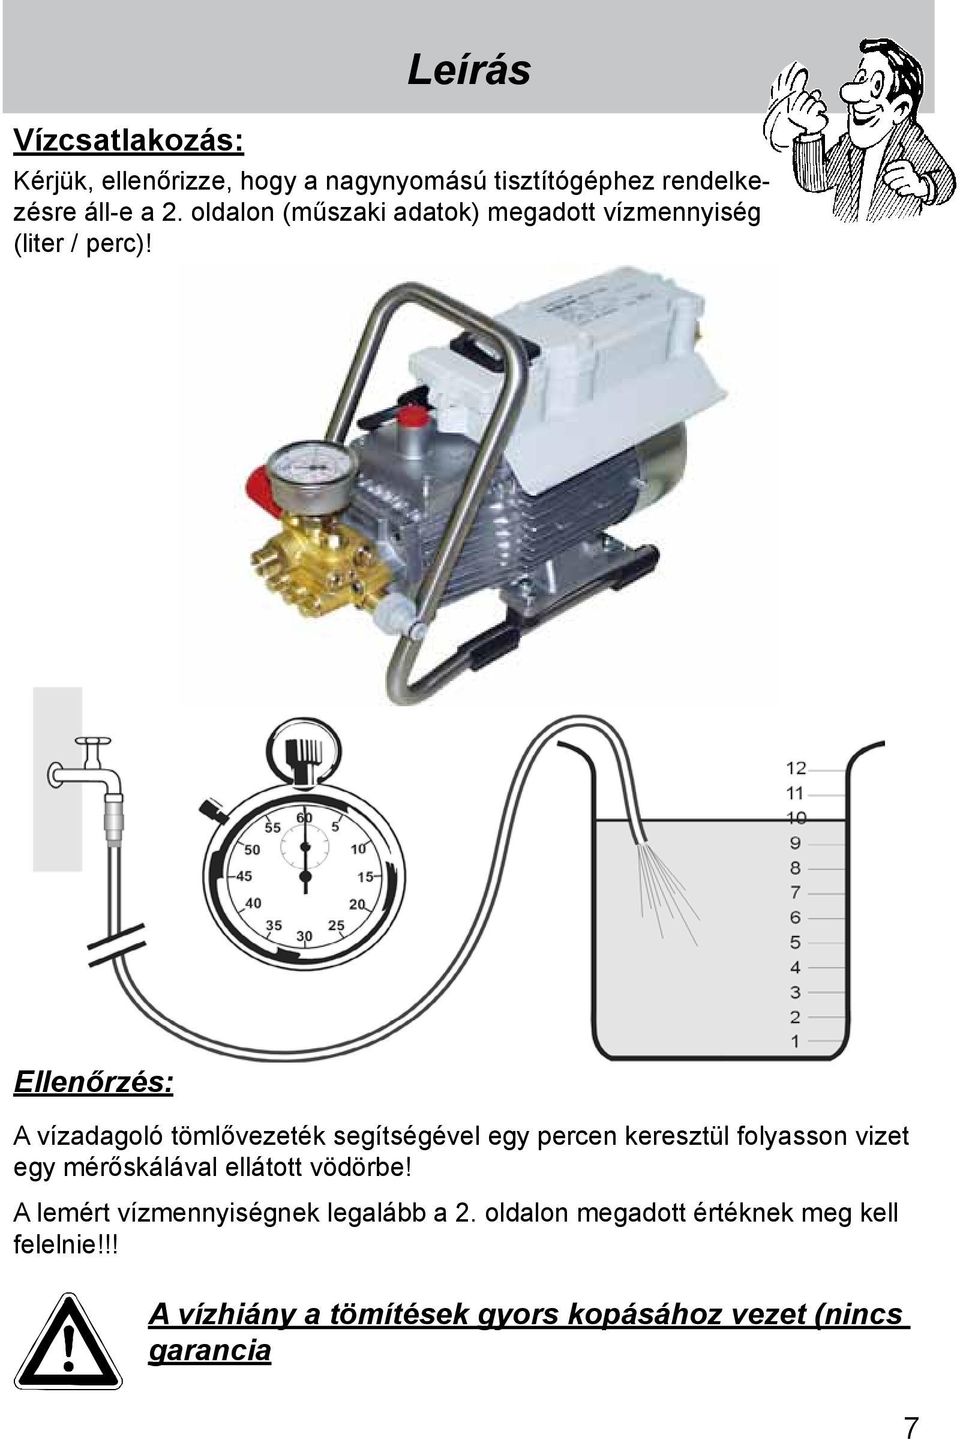 Ellenőrzés: A vízadagoló tömlővezeték segítségével egy percen keresztül folyasson vizet egy mérőskálával